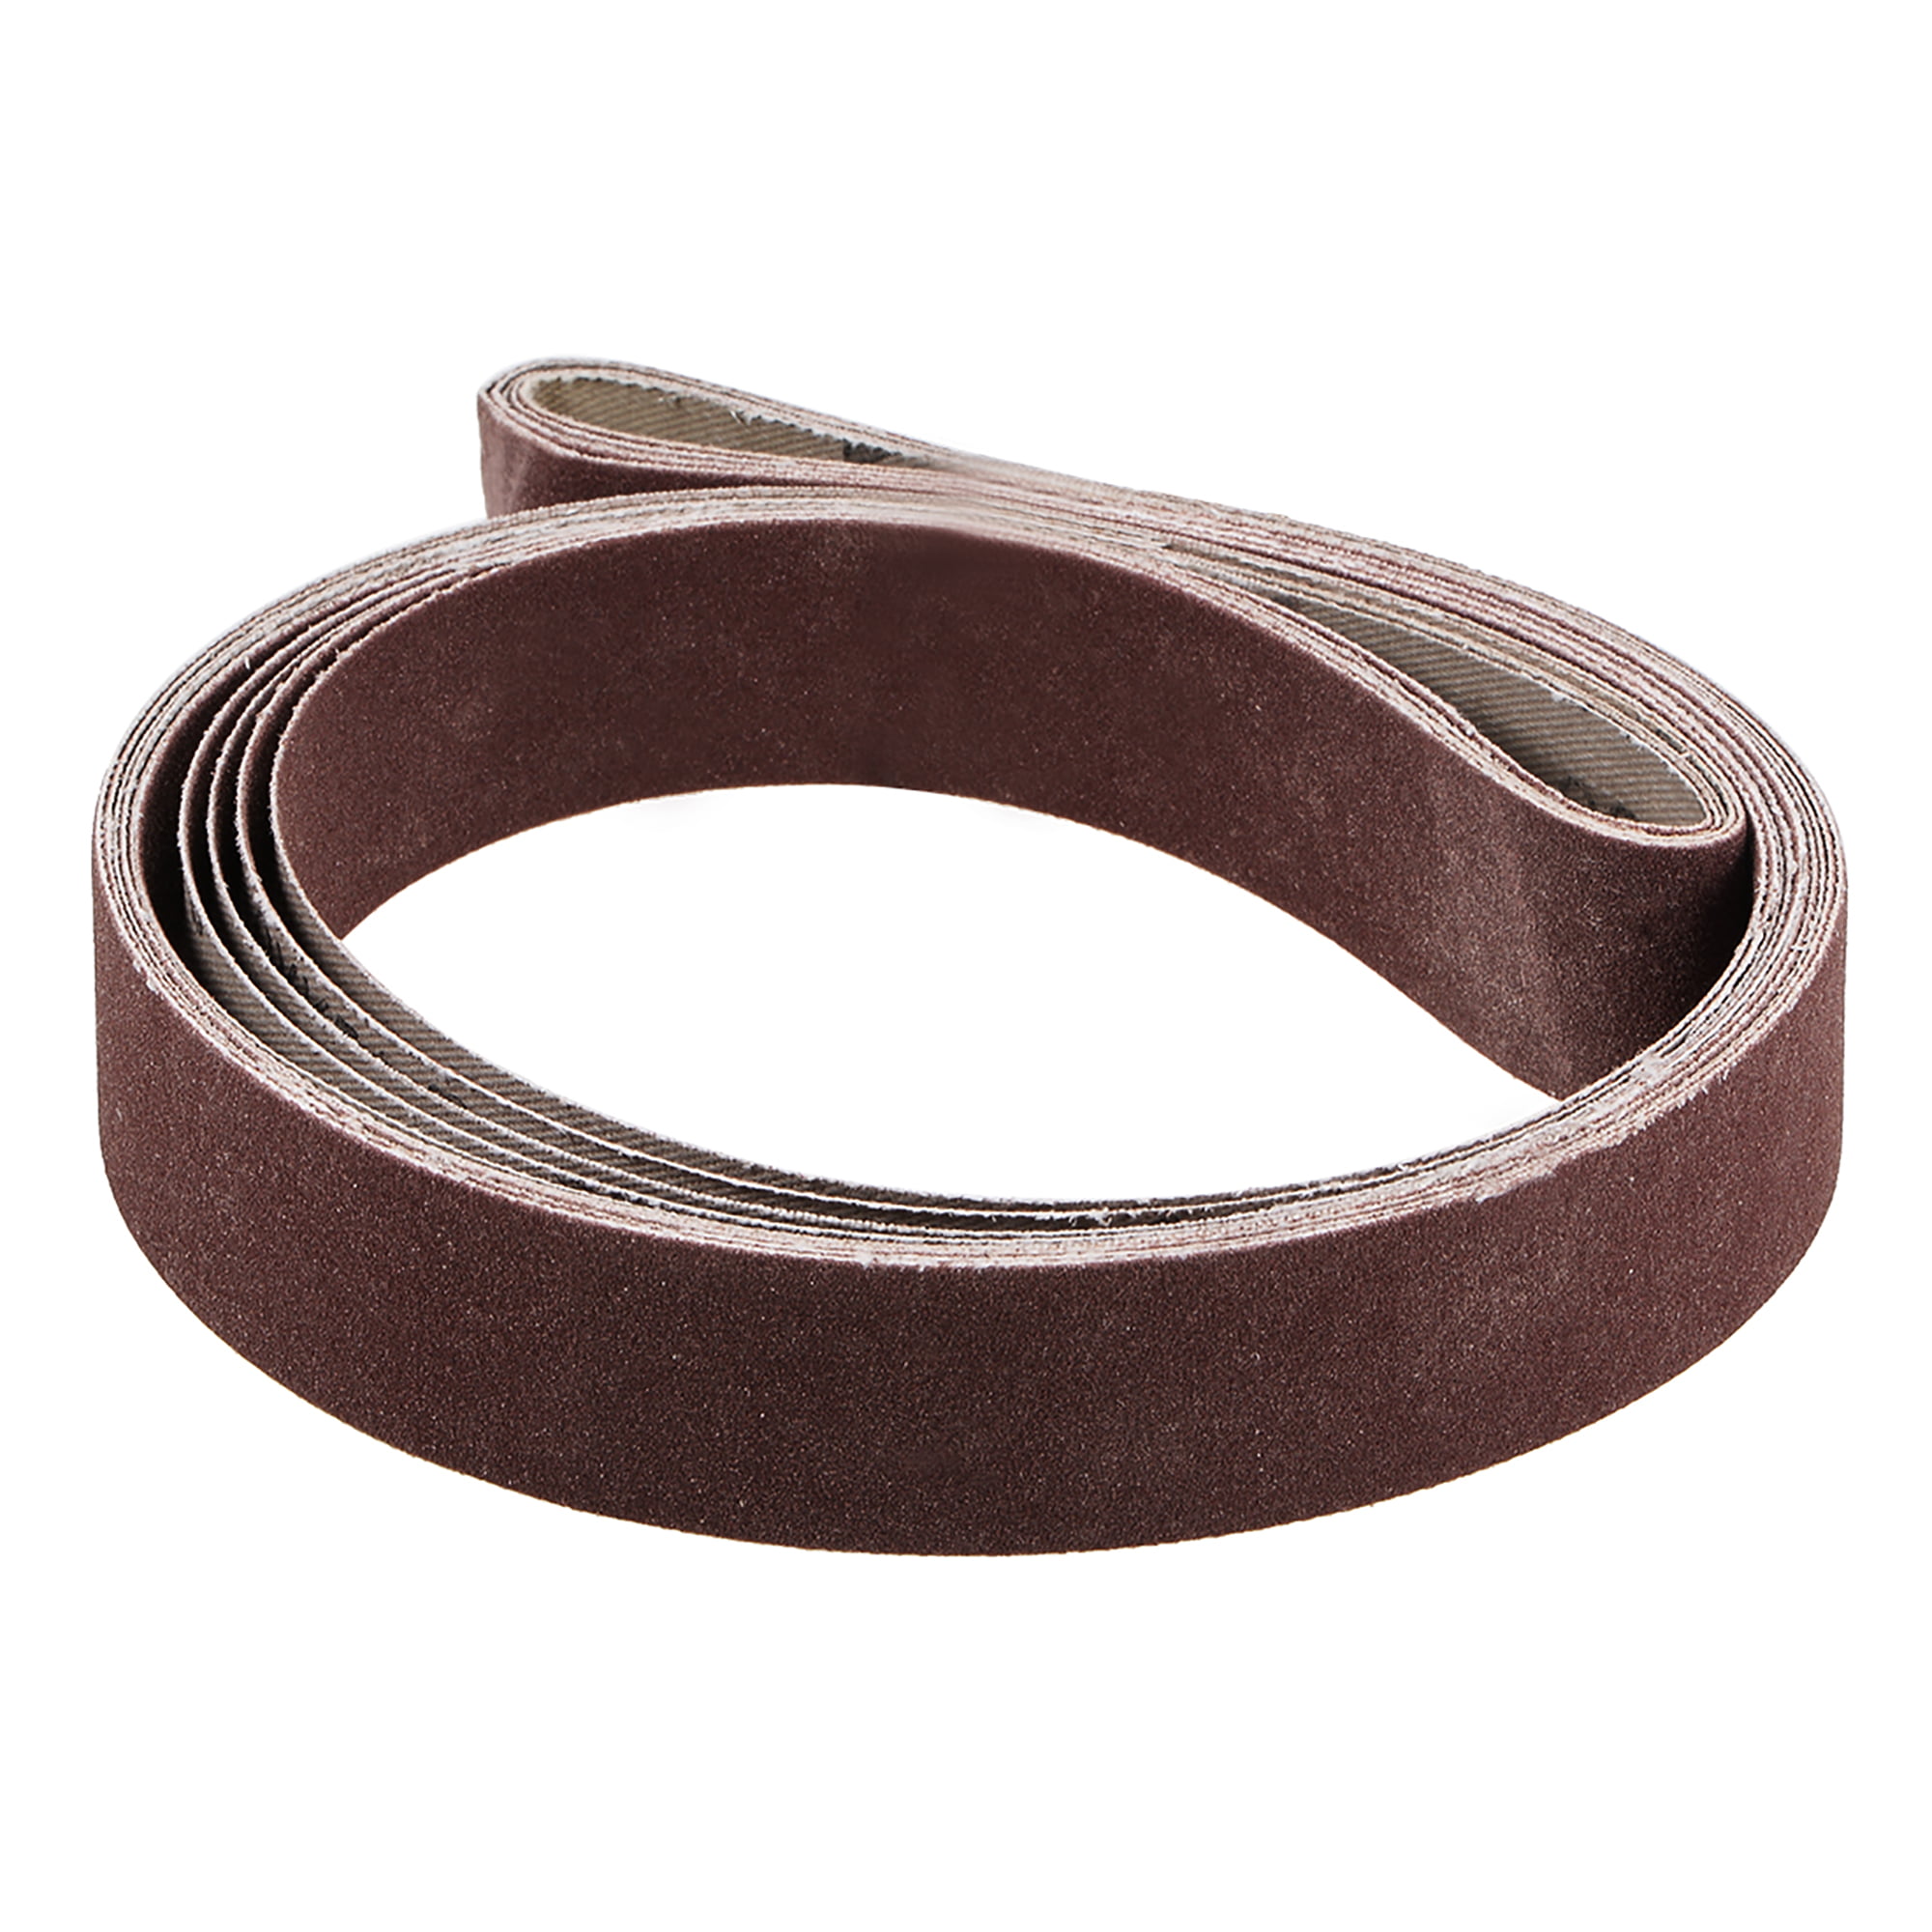 uxcell 1-inch x 21-inch 120-Grits Sanding Belt Aluminum Oxide Sand Belts for Belt Sander 5pcs 